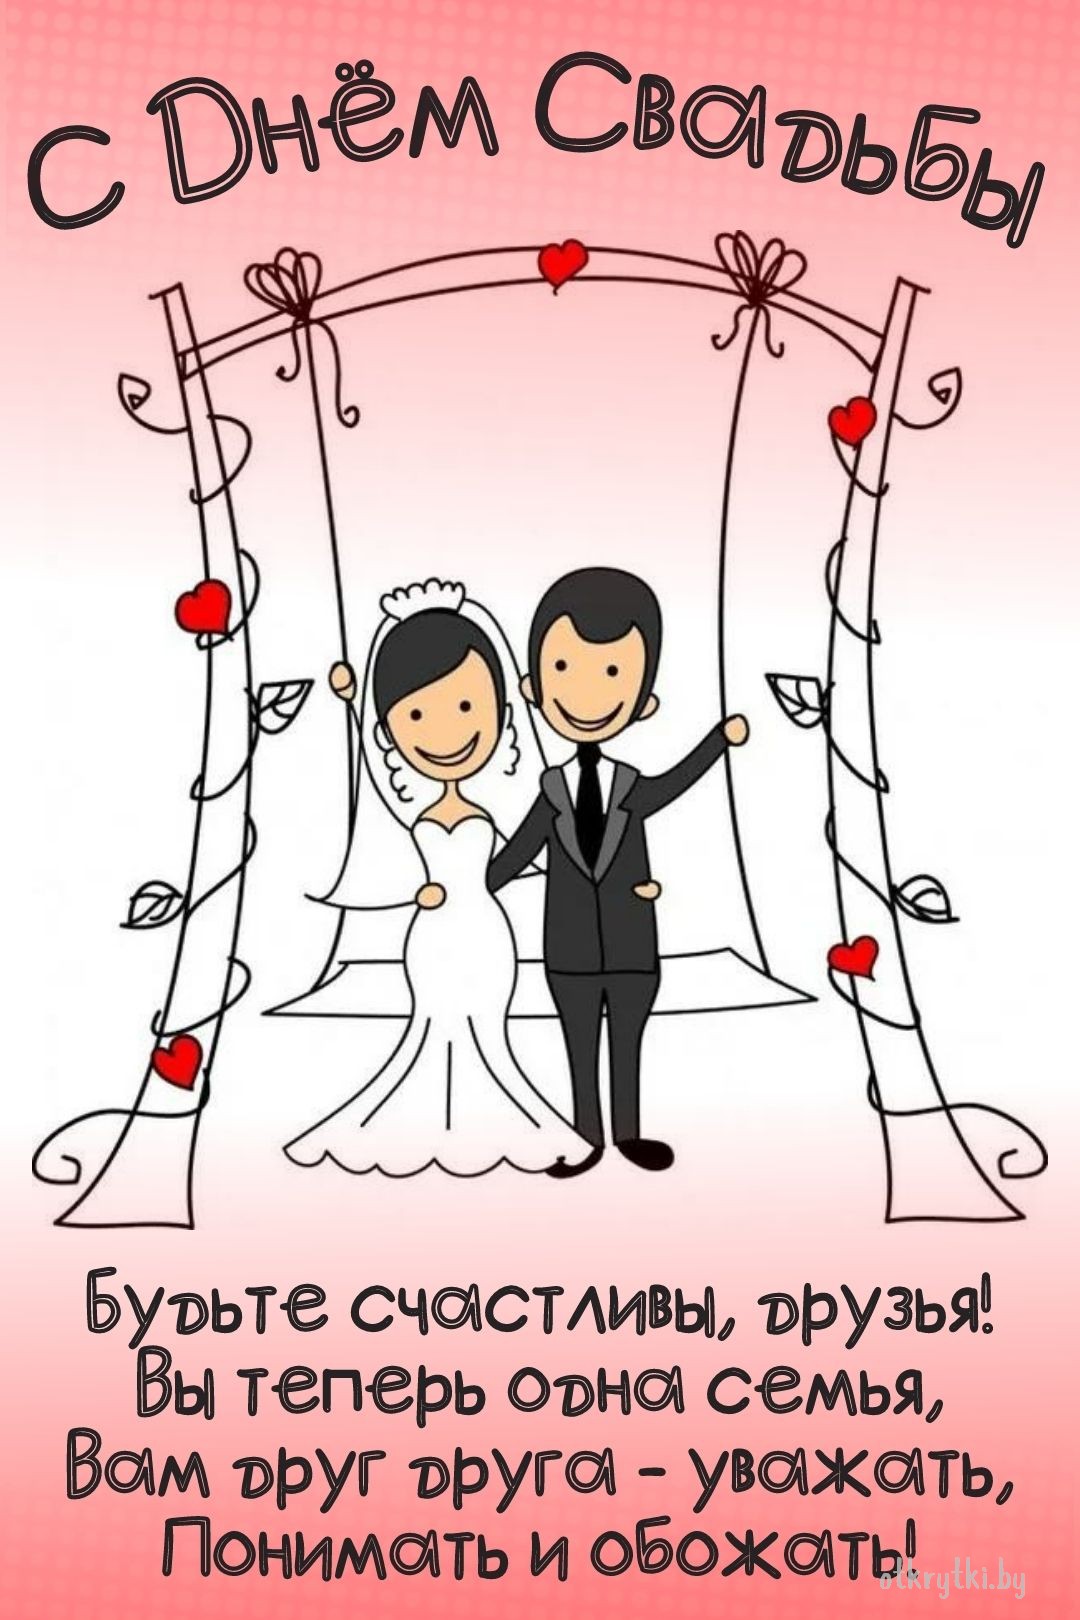 Поздравительная виртуальная открытка с днем свадьбы